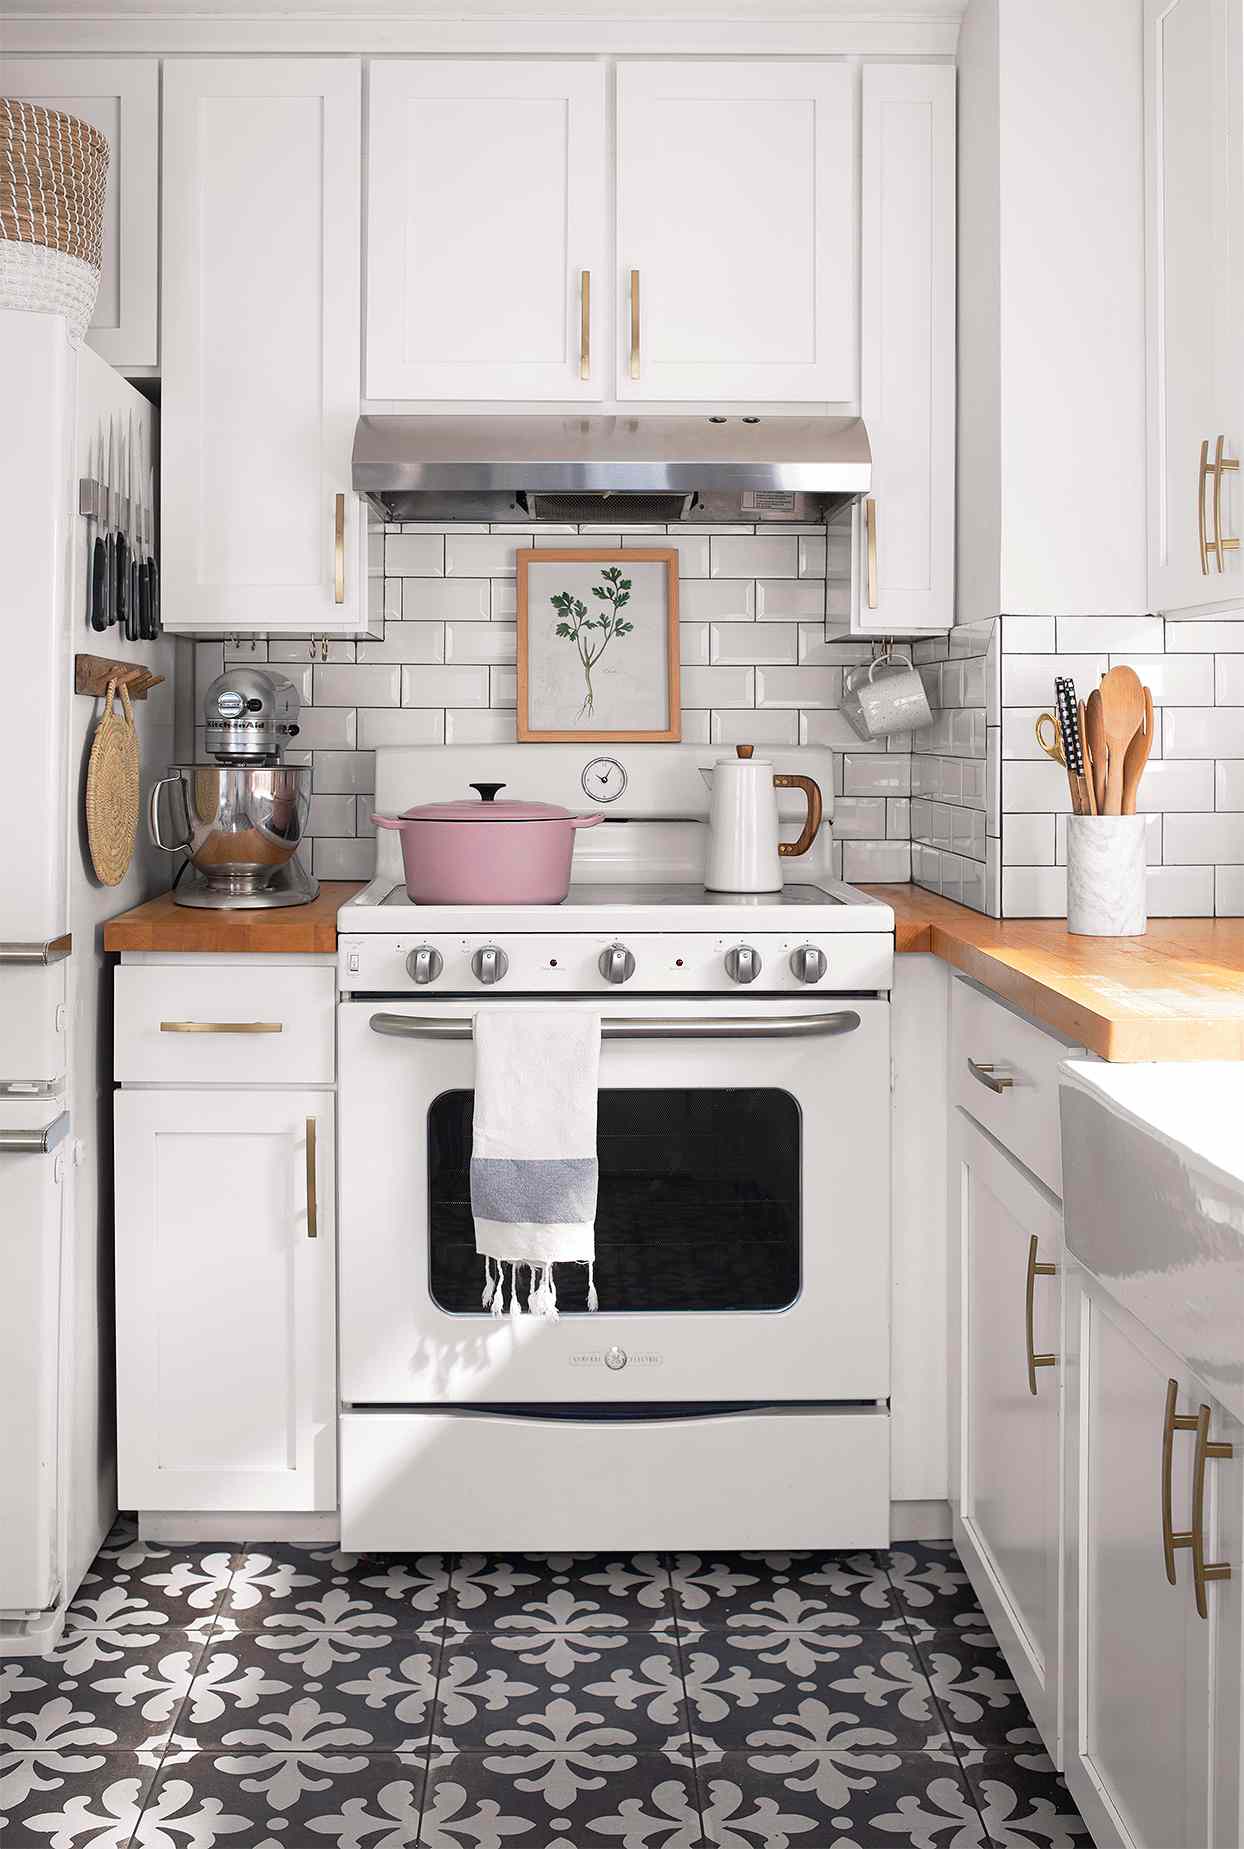 white shaker kitchen cabinets retro range pink dutch oven kettle